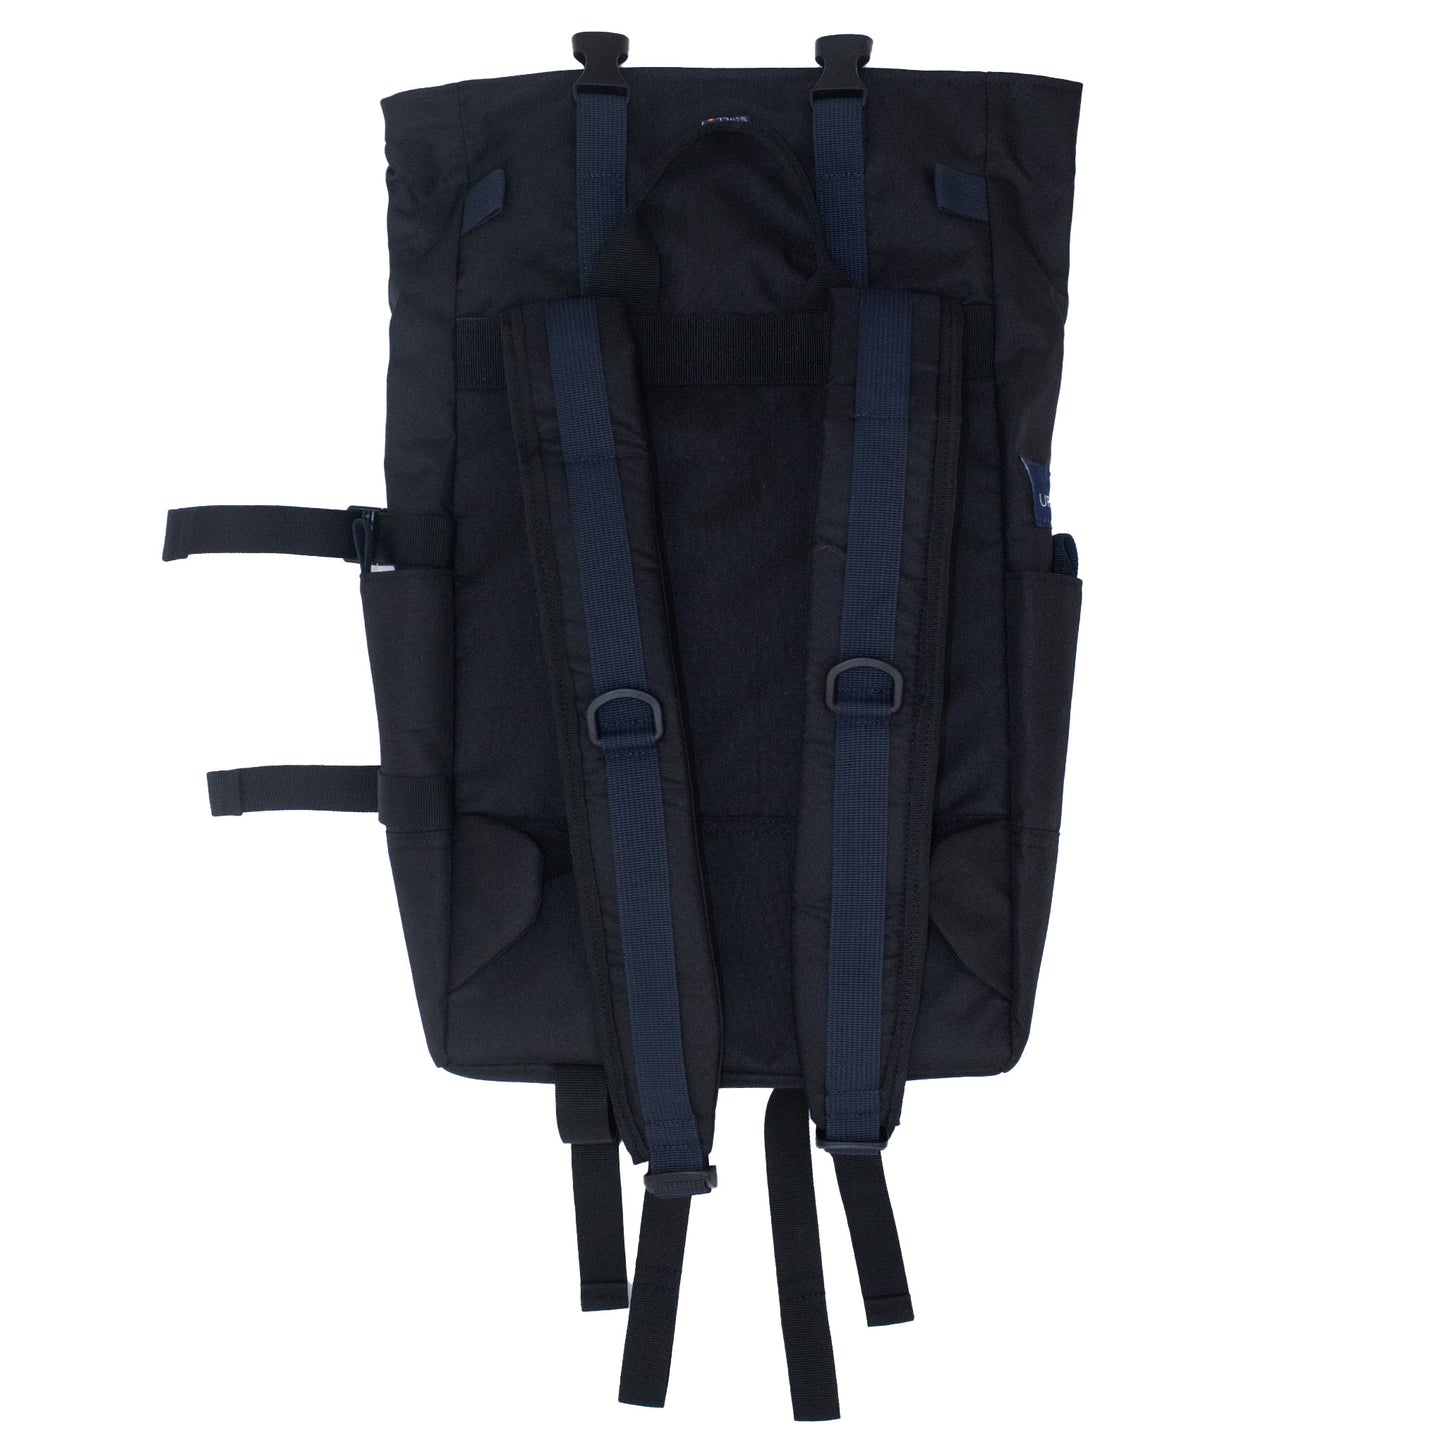 Mount Tabor Backpack Jet Black - Uriel Studio